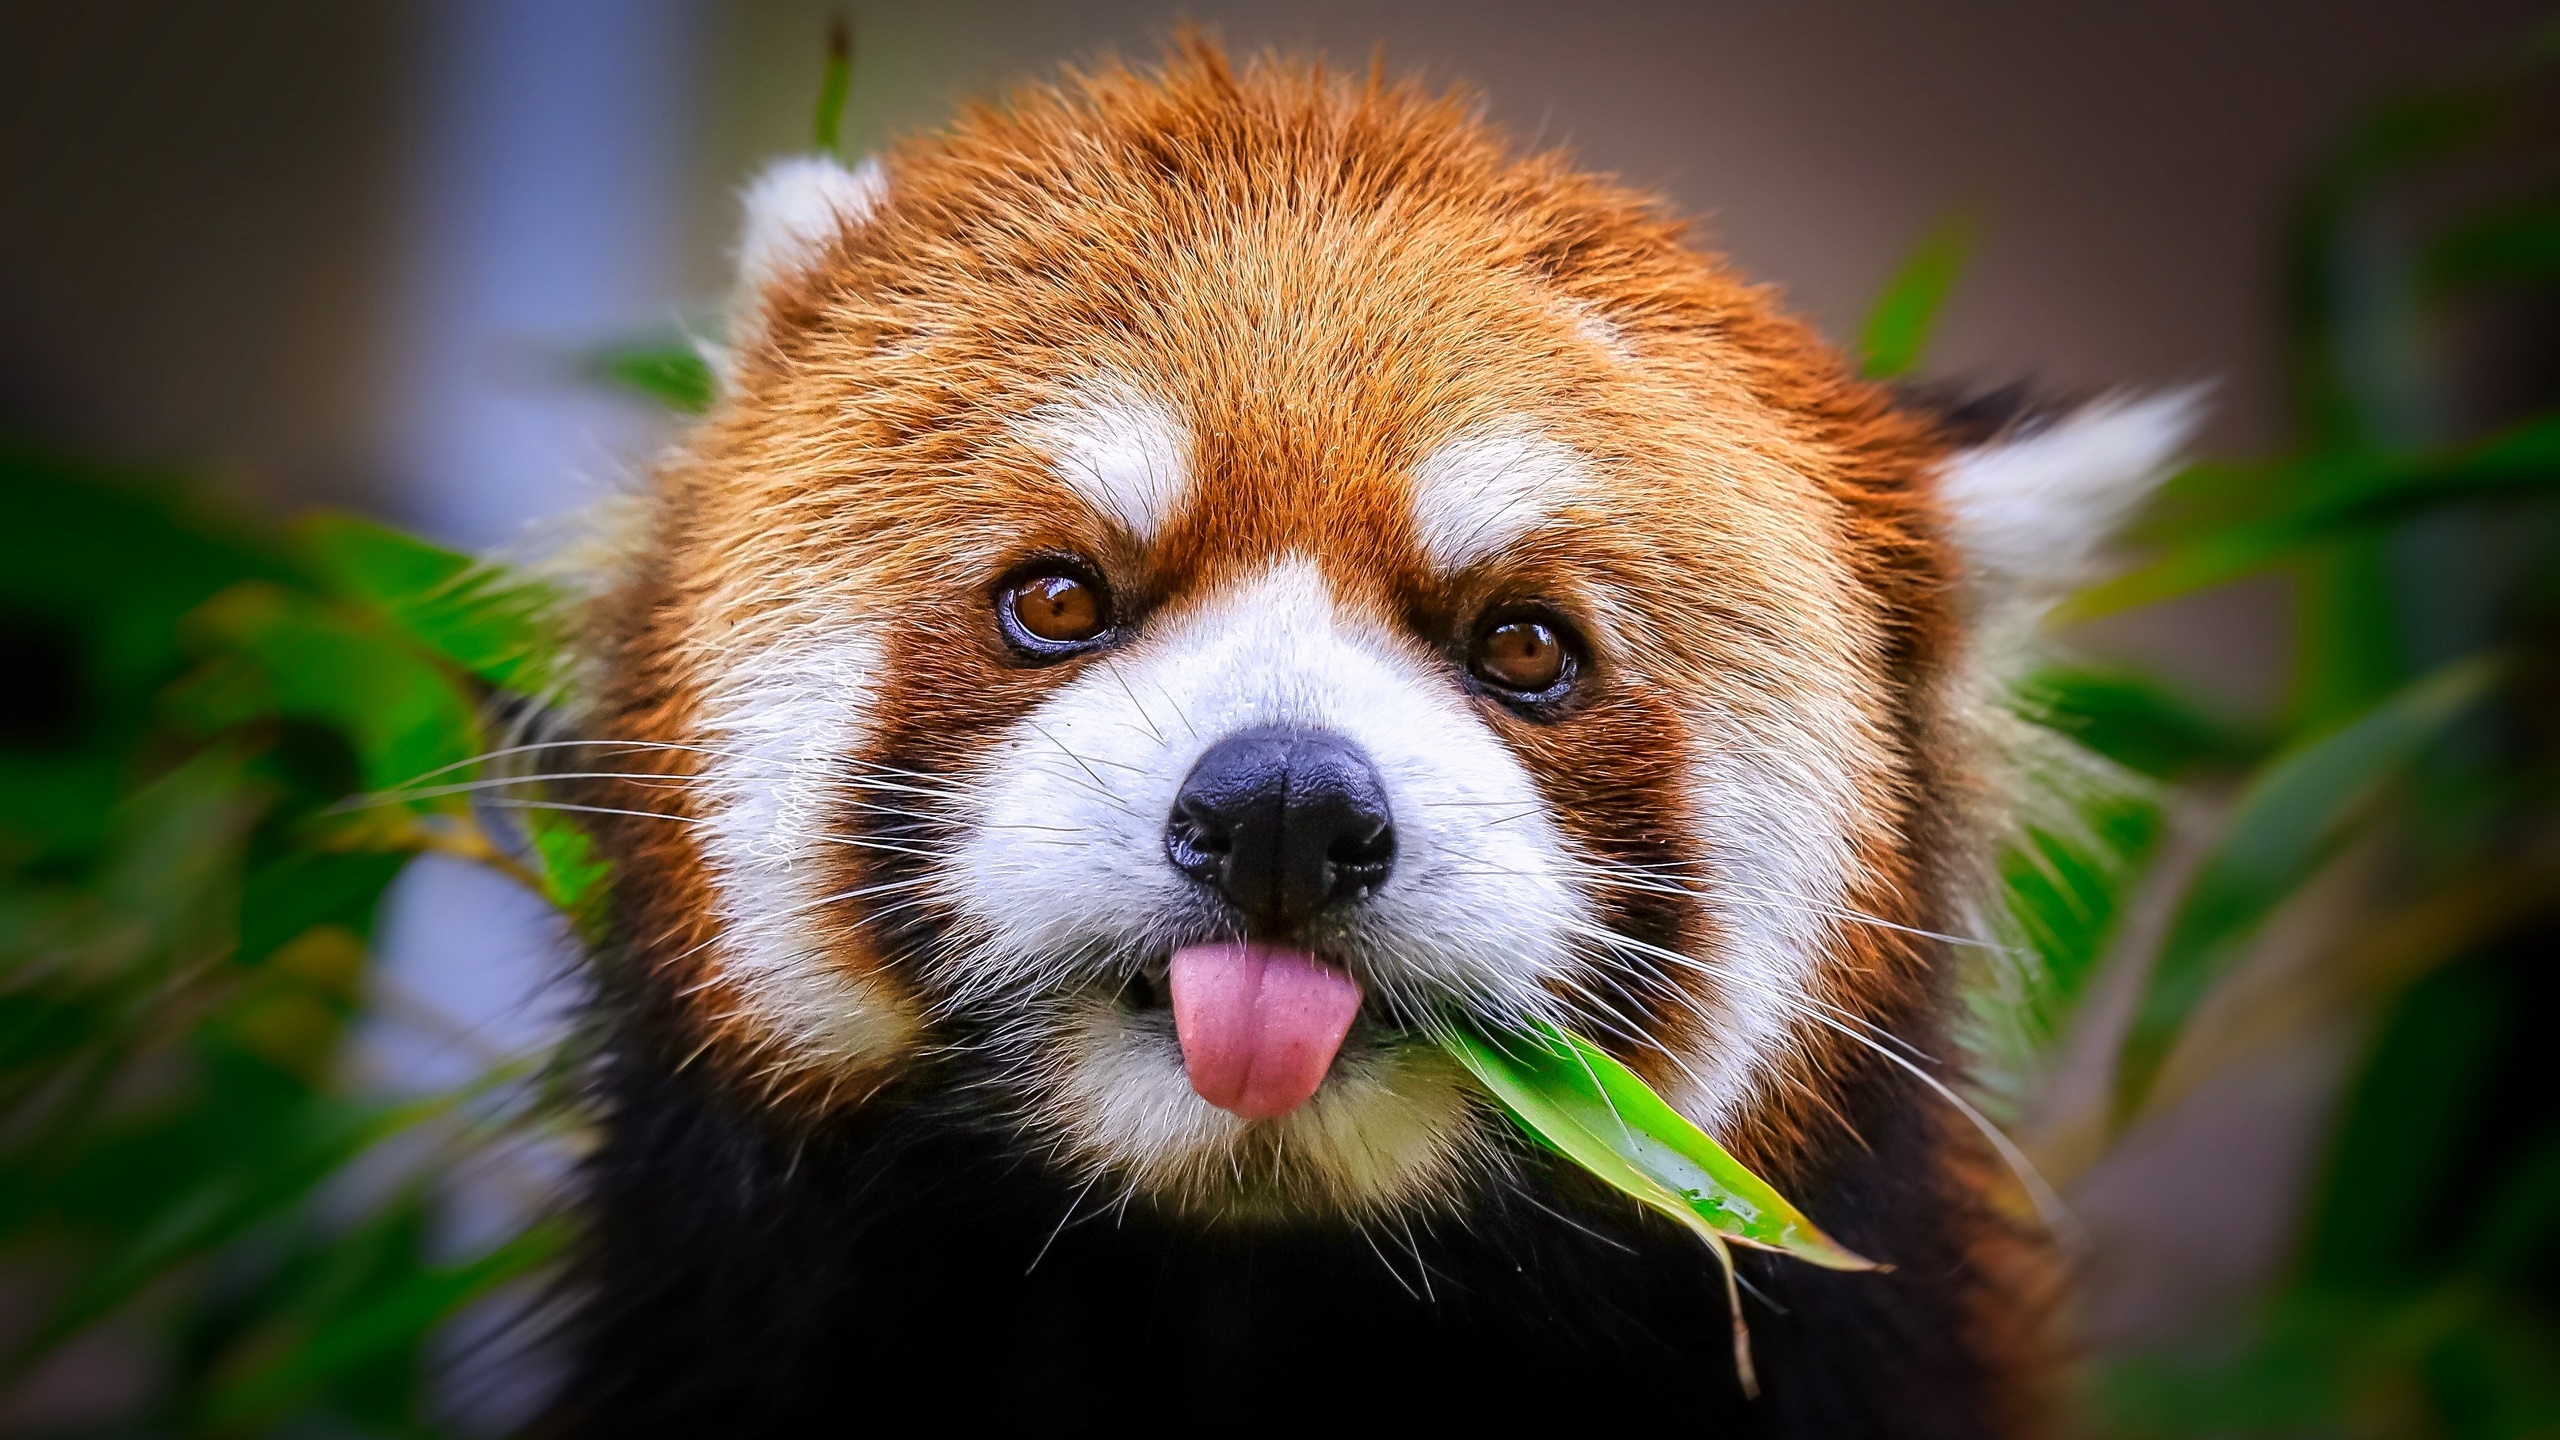 Red panda tongues animals, Mammals wallpaper, 2560x1440 HD Desktop